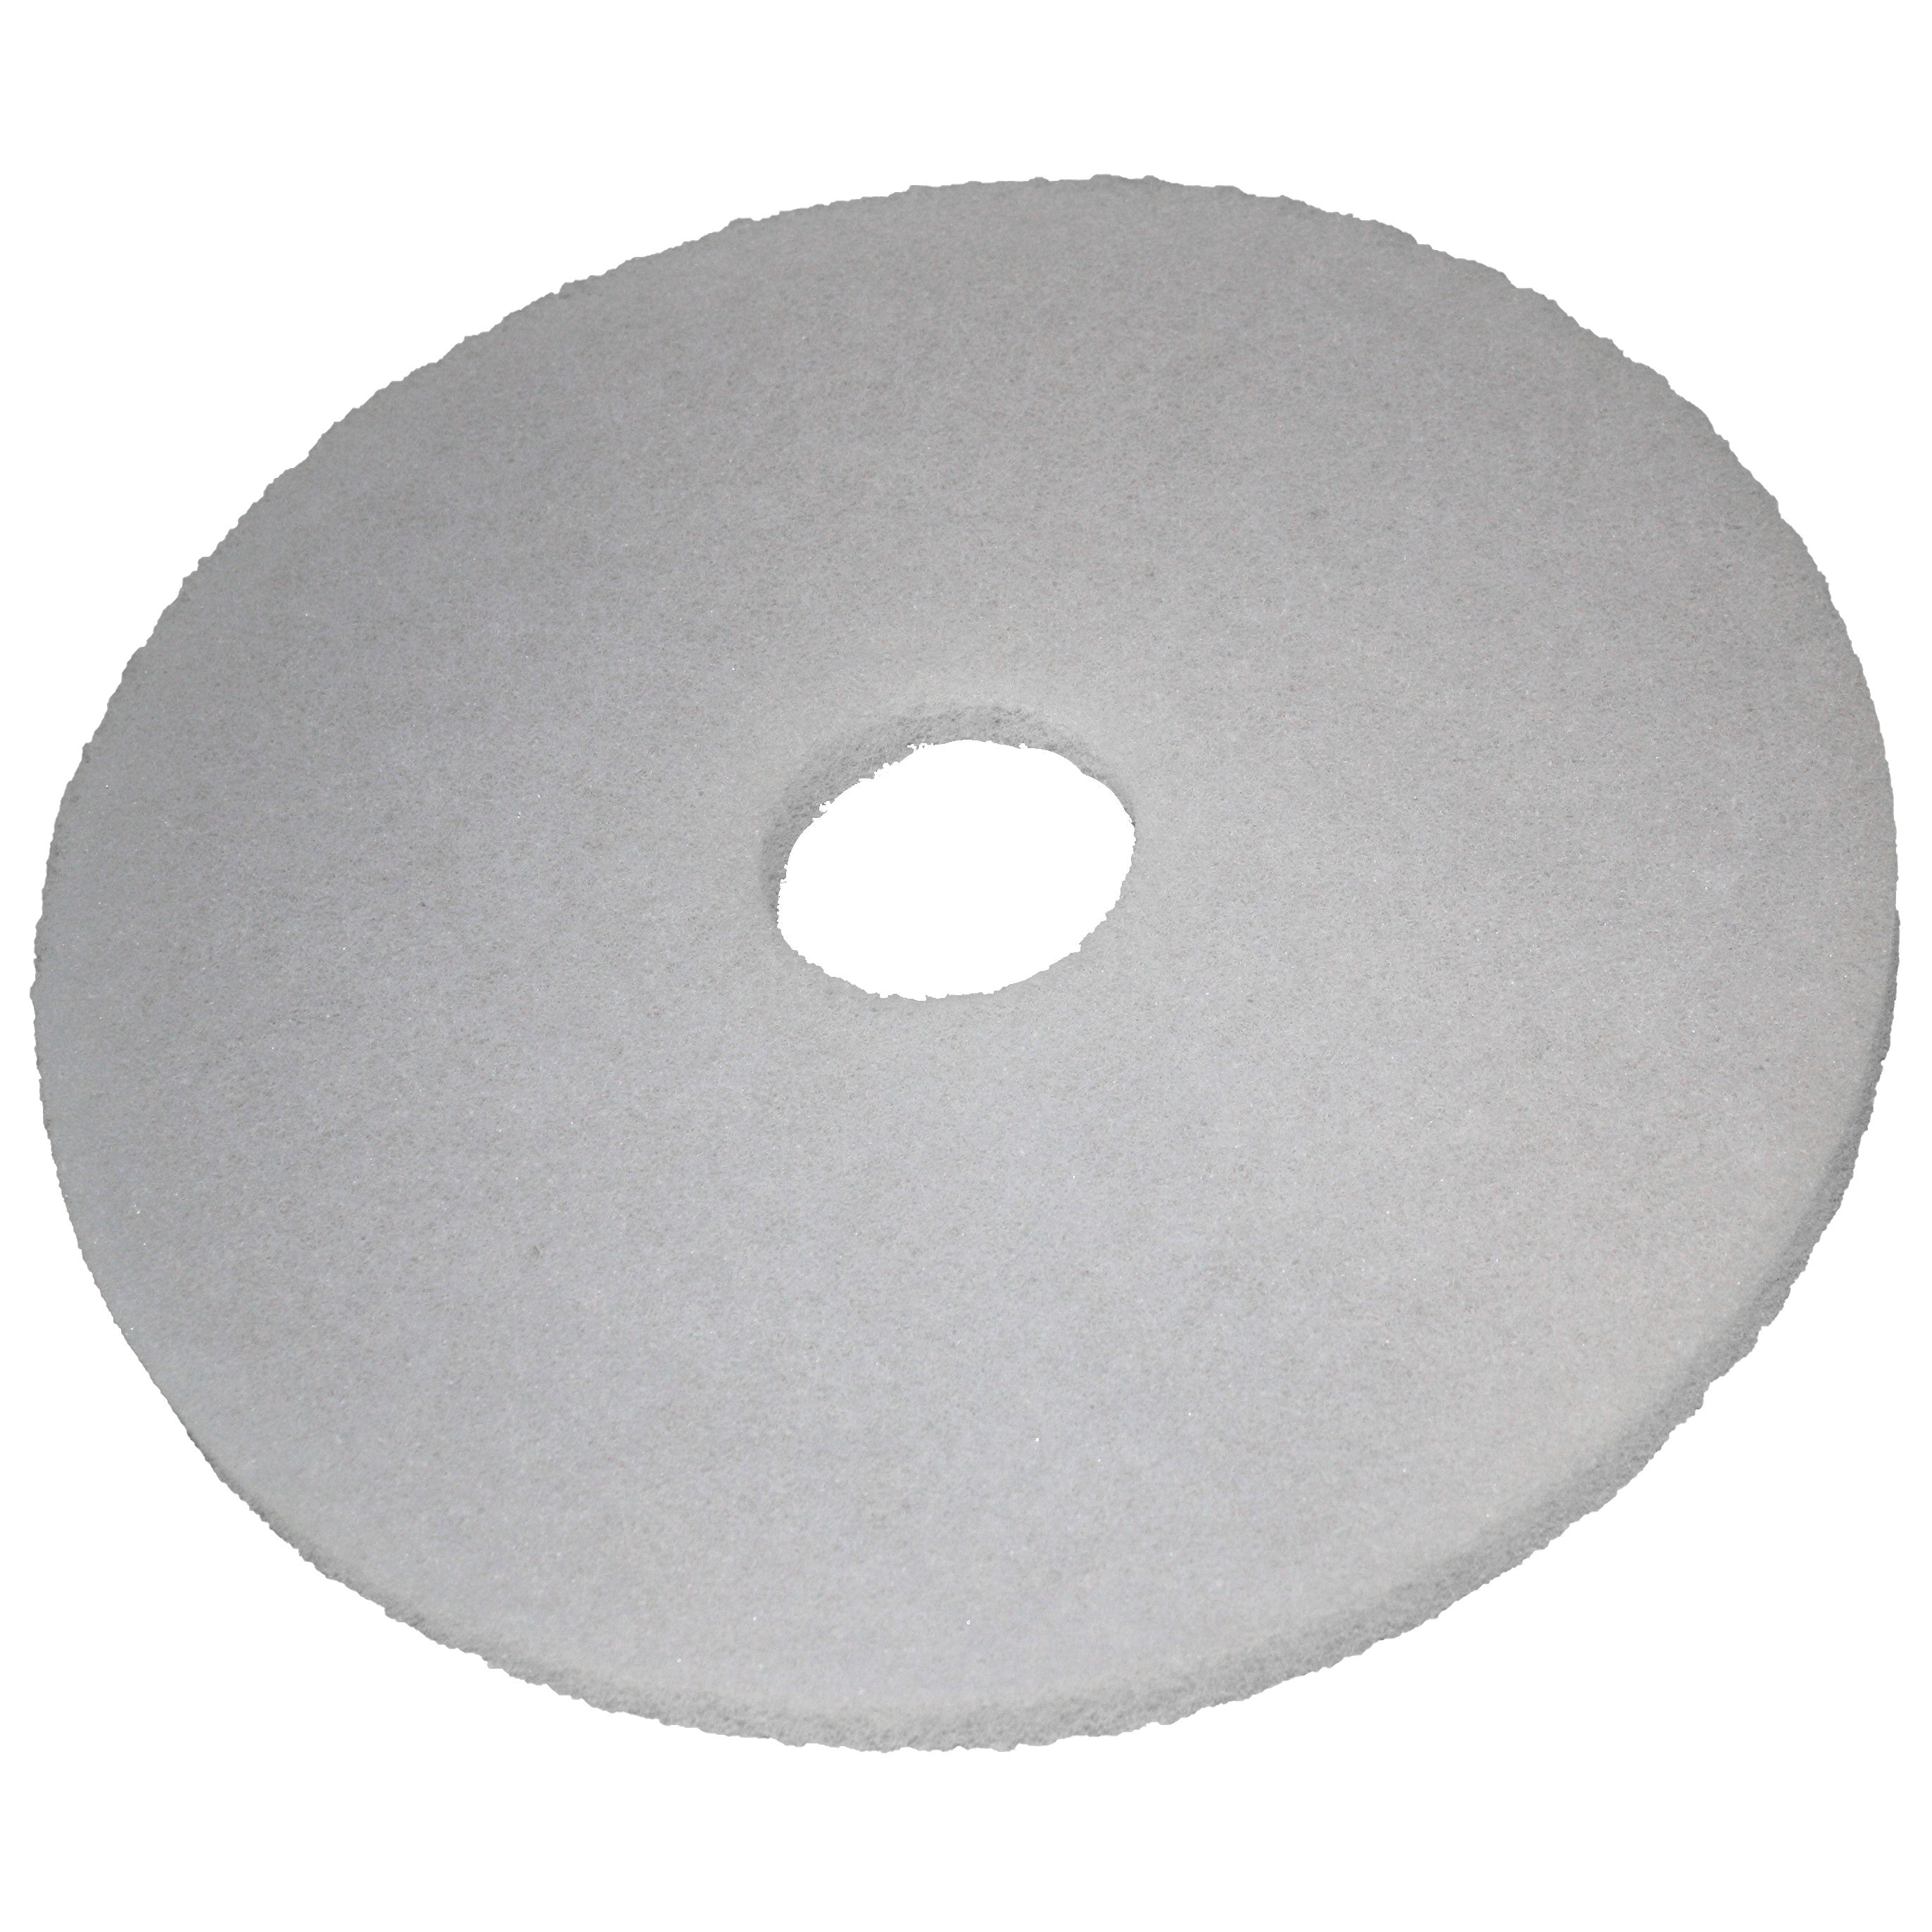 Pad blanc, Ø 254 mm, polyester